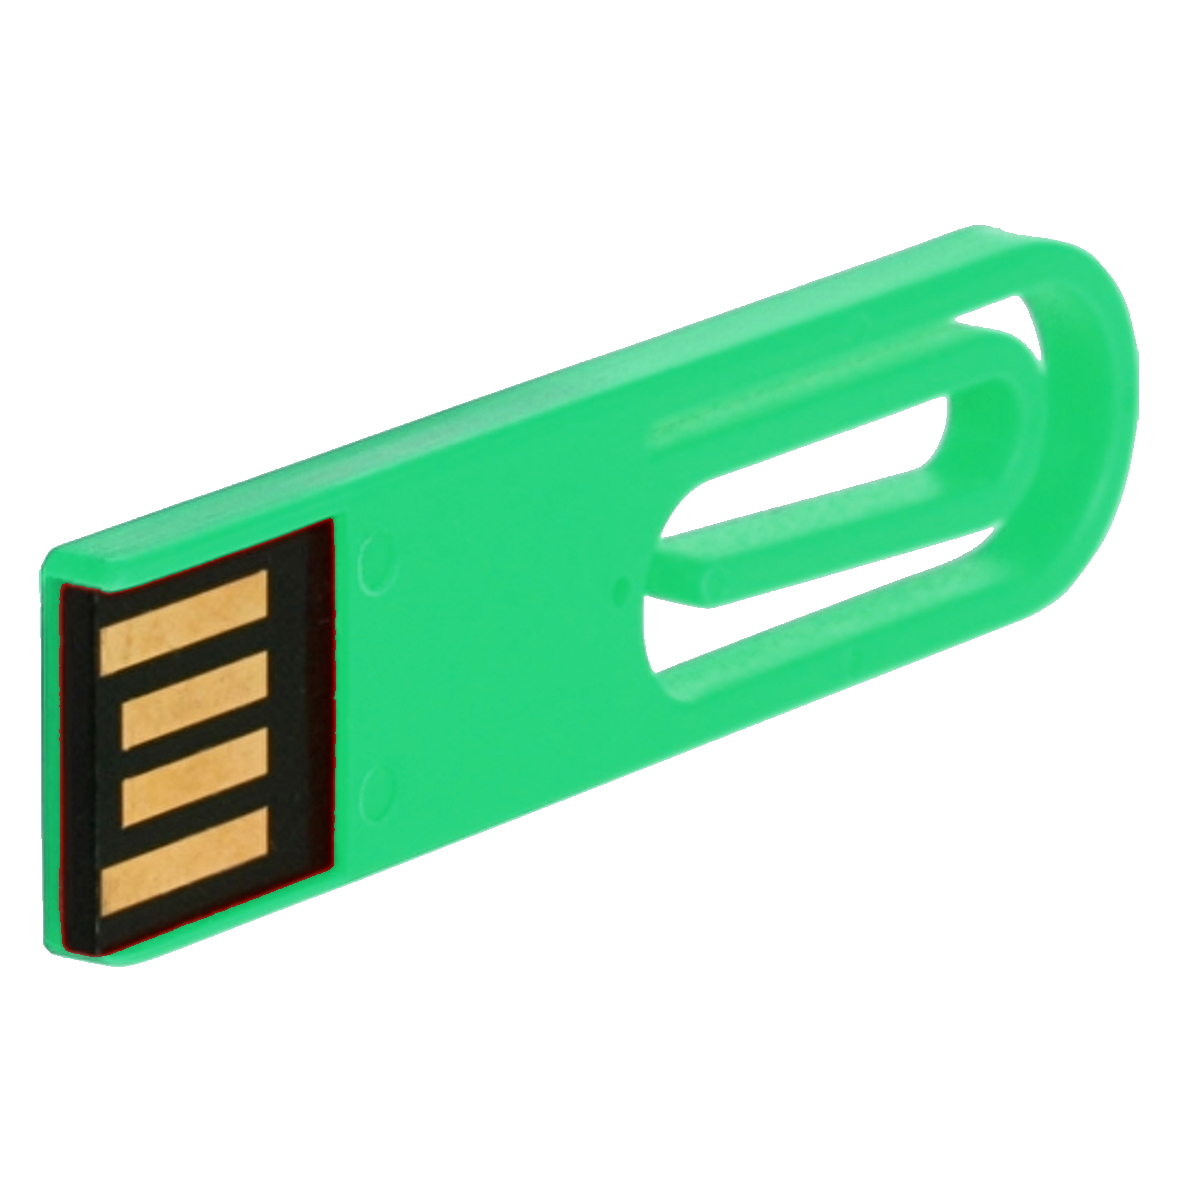 USB GERMANY ® GB) 2 eCLIP USB-Stick (Grün